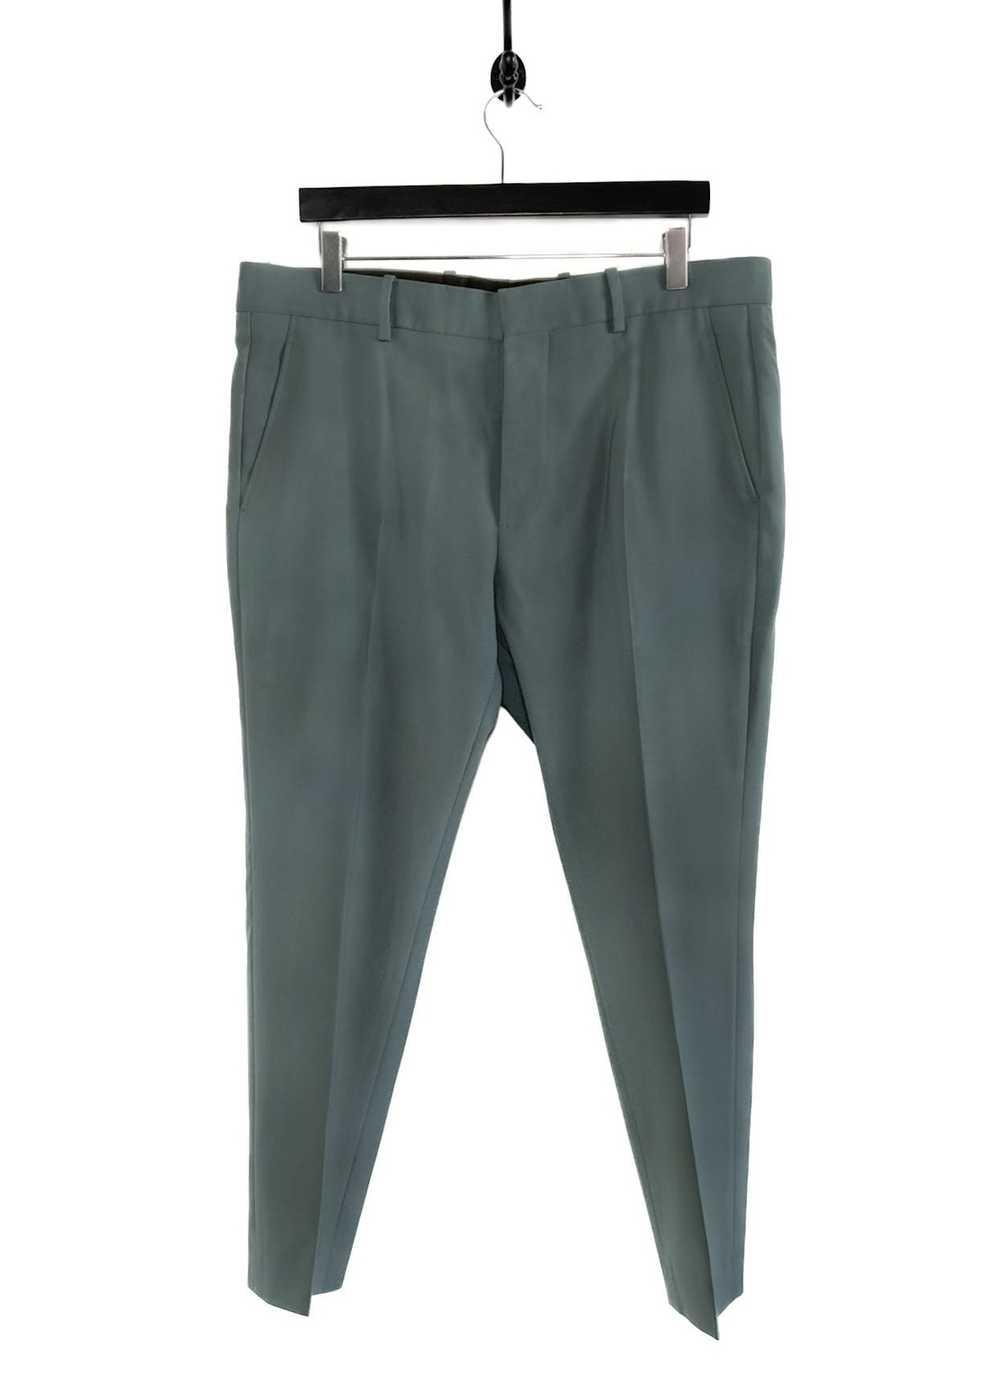 Marni Marni Grey Green Light Wool Trousers - image 2